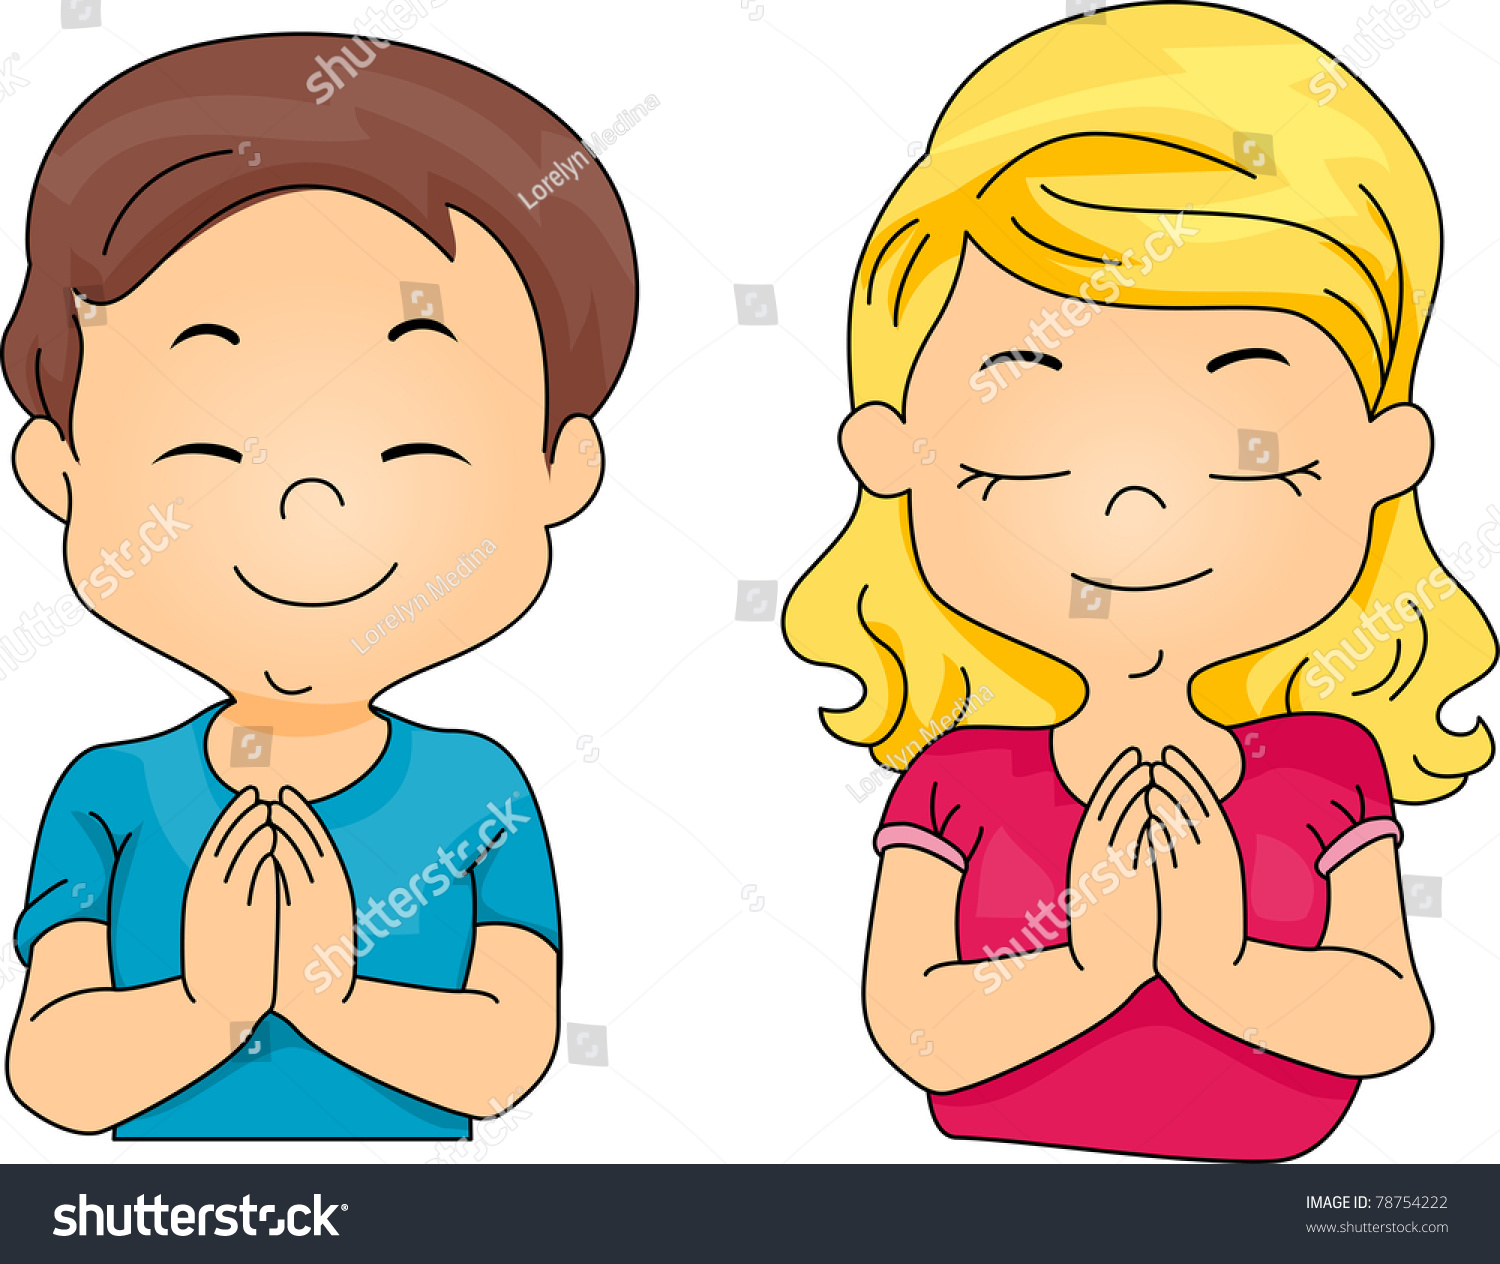 Resultado de imagen para kids praying